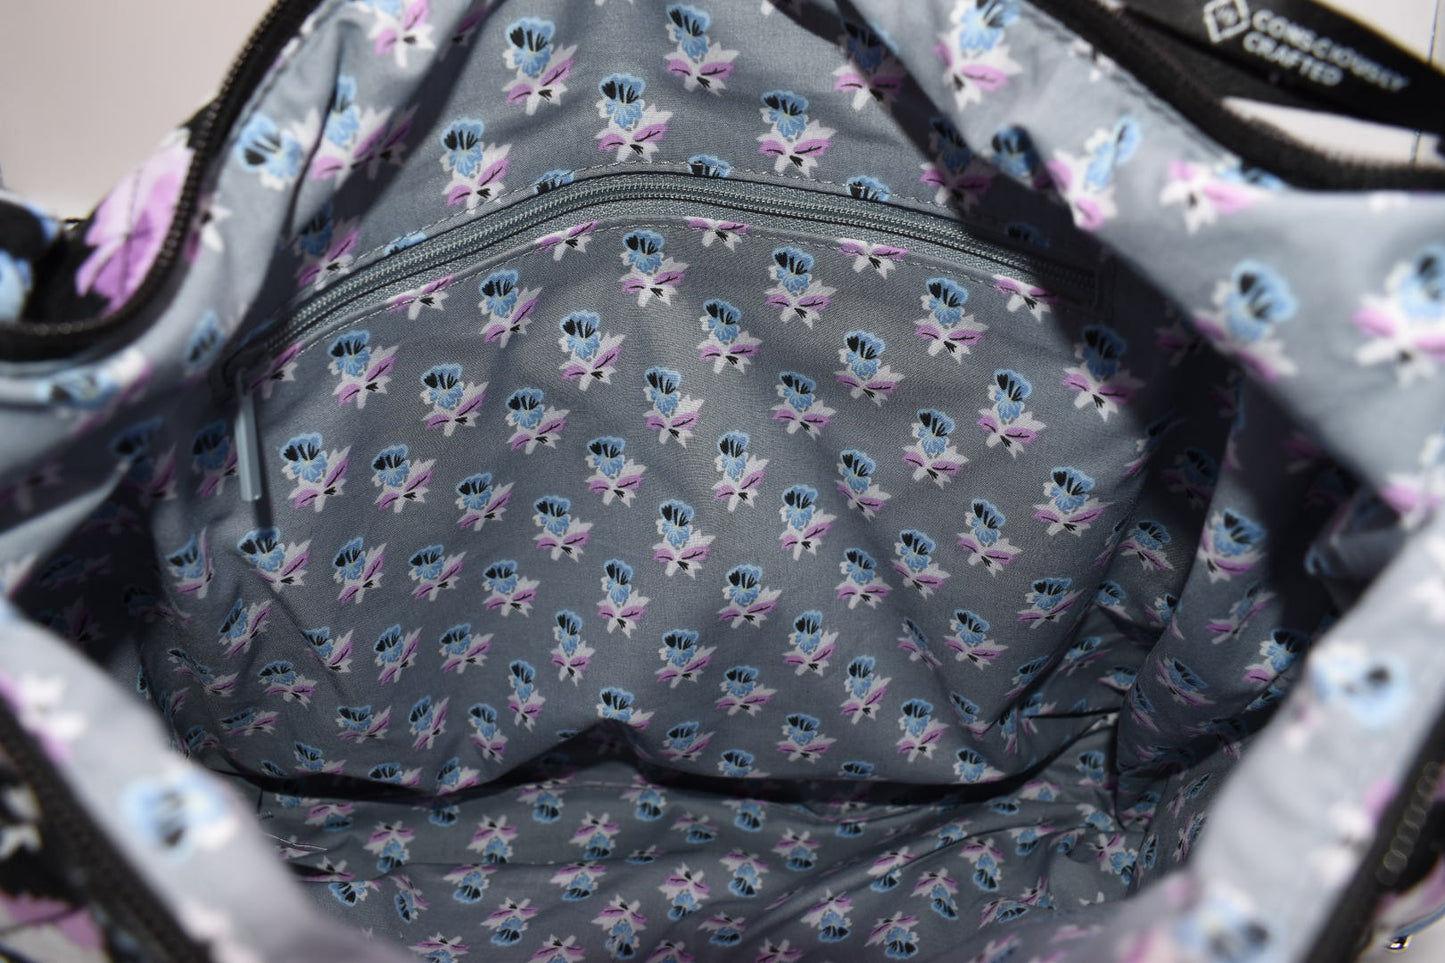 Vera Bradley Convertible Backpack Shoulder Bag in Plum Pansies